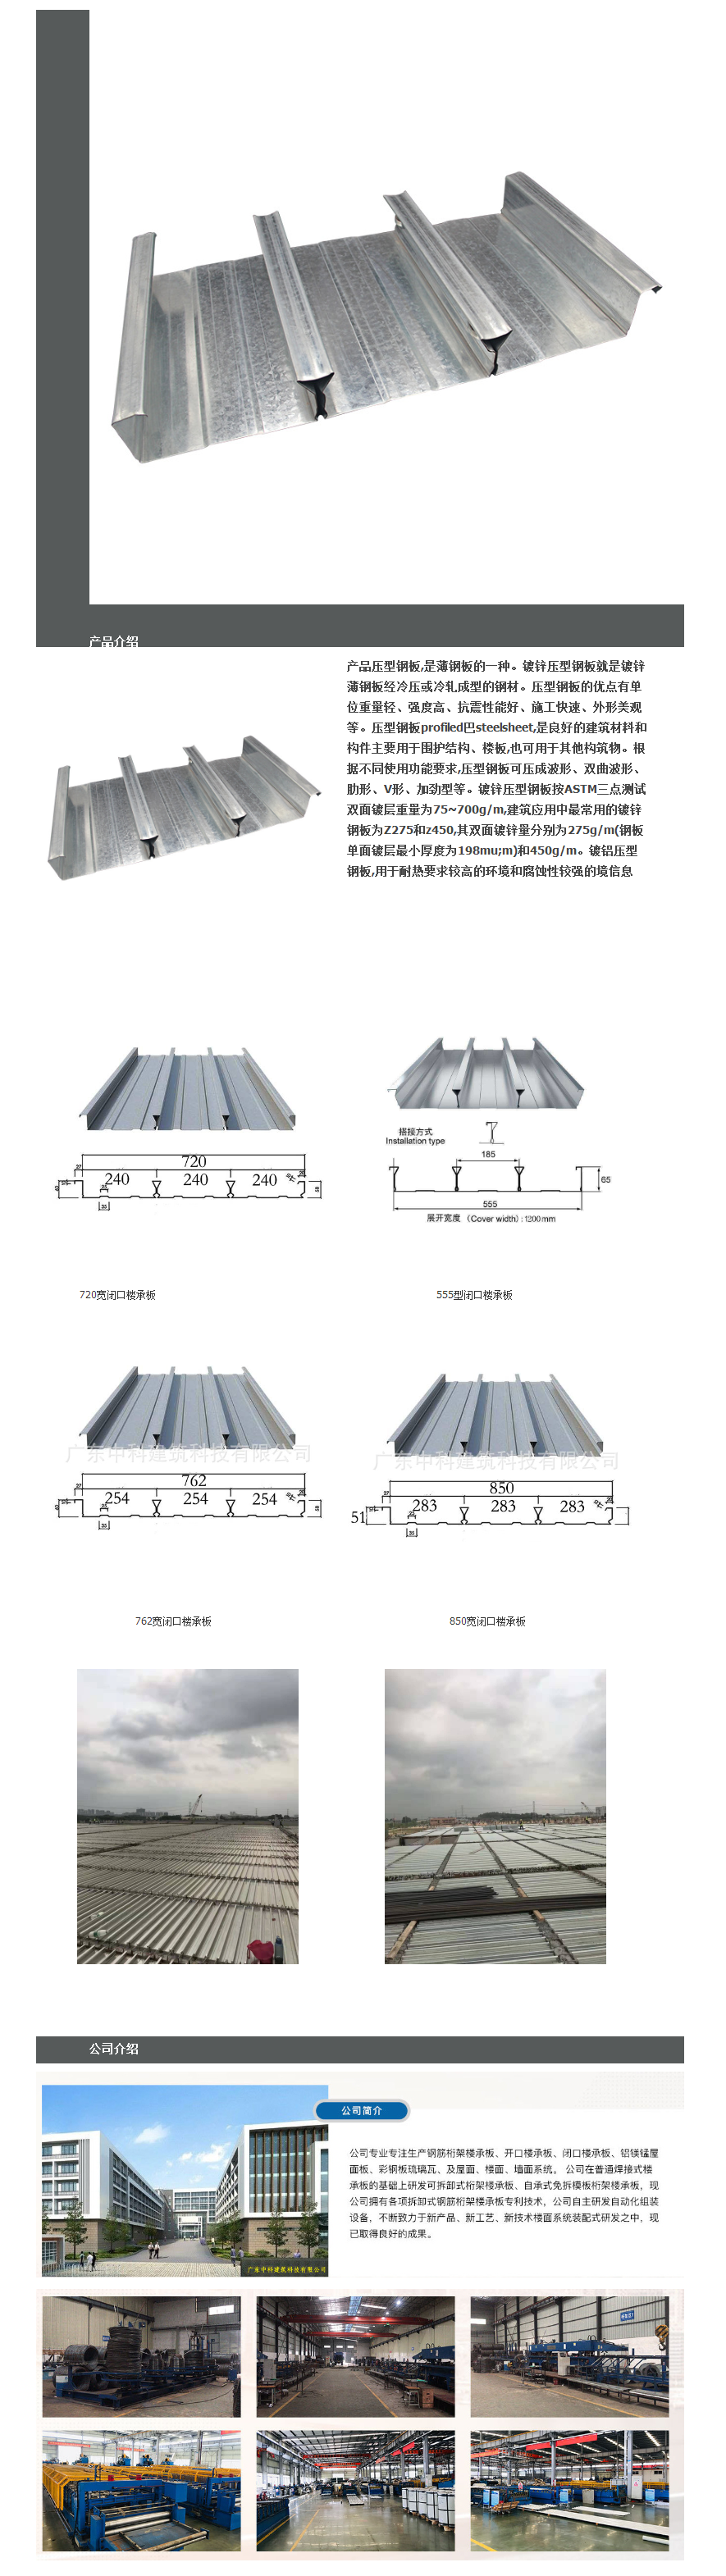 生产YXB40-187-750闭口式楼承板 镀锌压型钢楼承板-阿里巴巴.png